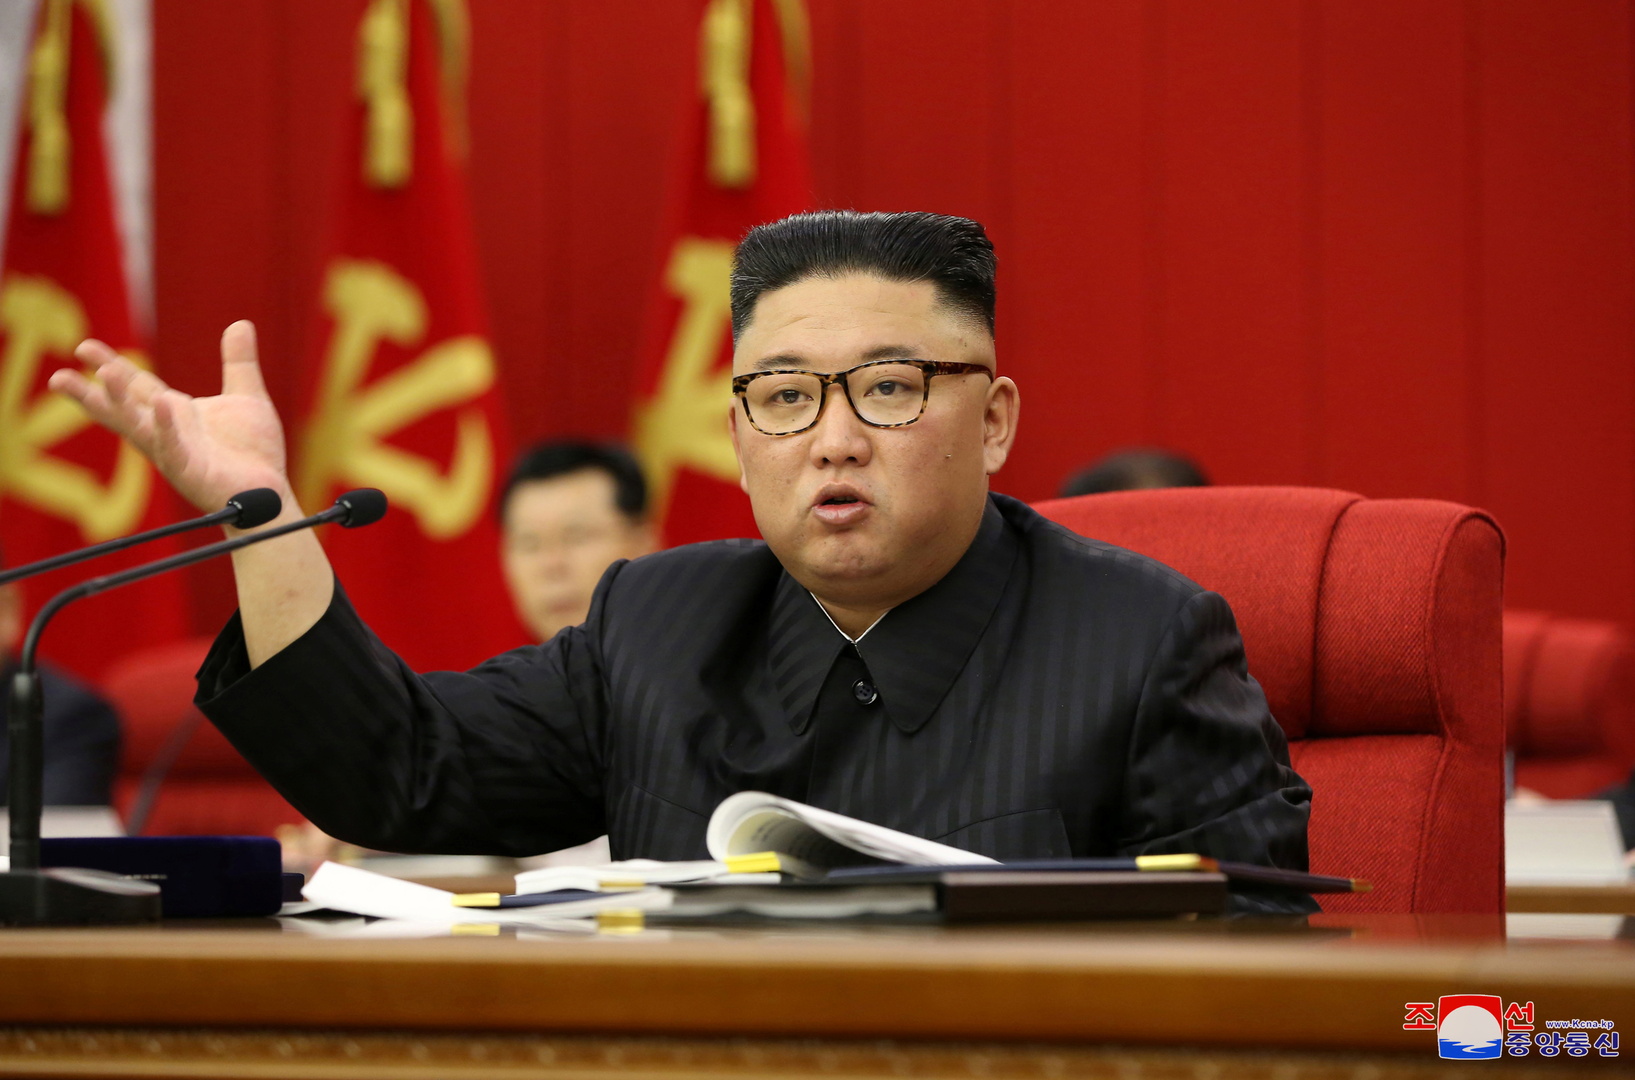 وسائل إعلام: كيم يقول إن كوريا الشمالية مستعدة سواء للحوار أو المواجهة مع واشنطن